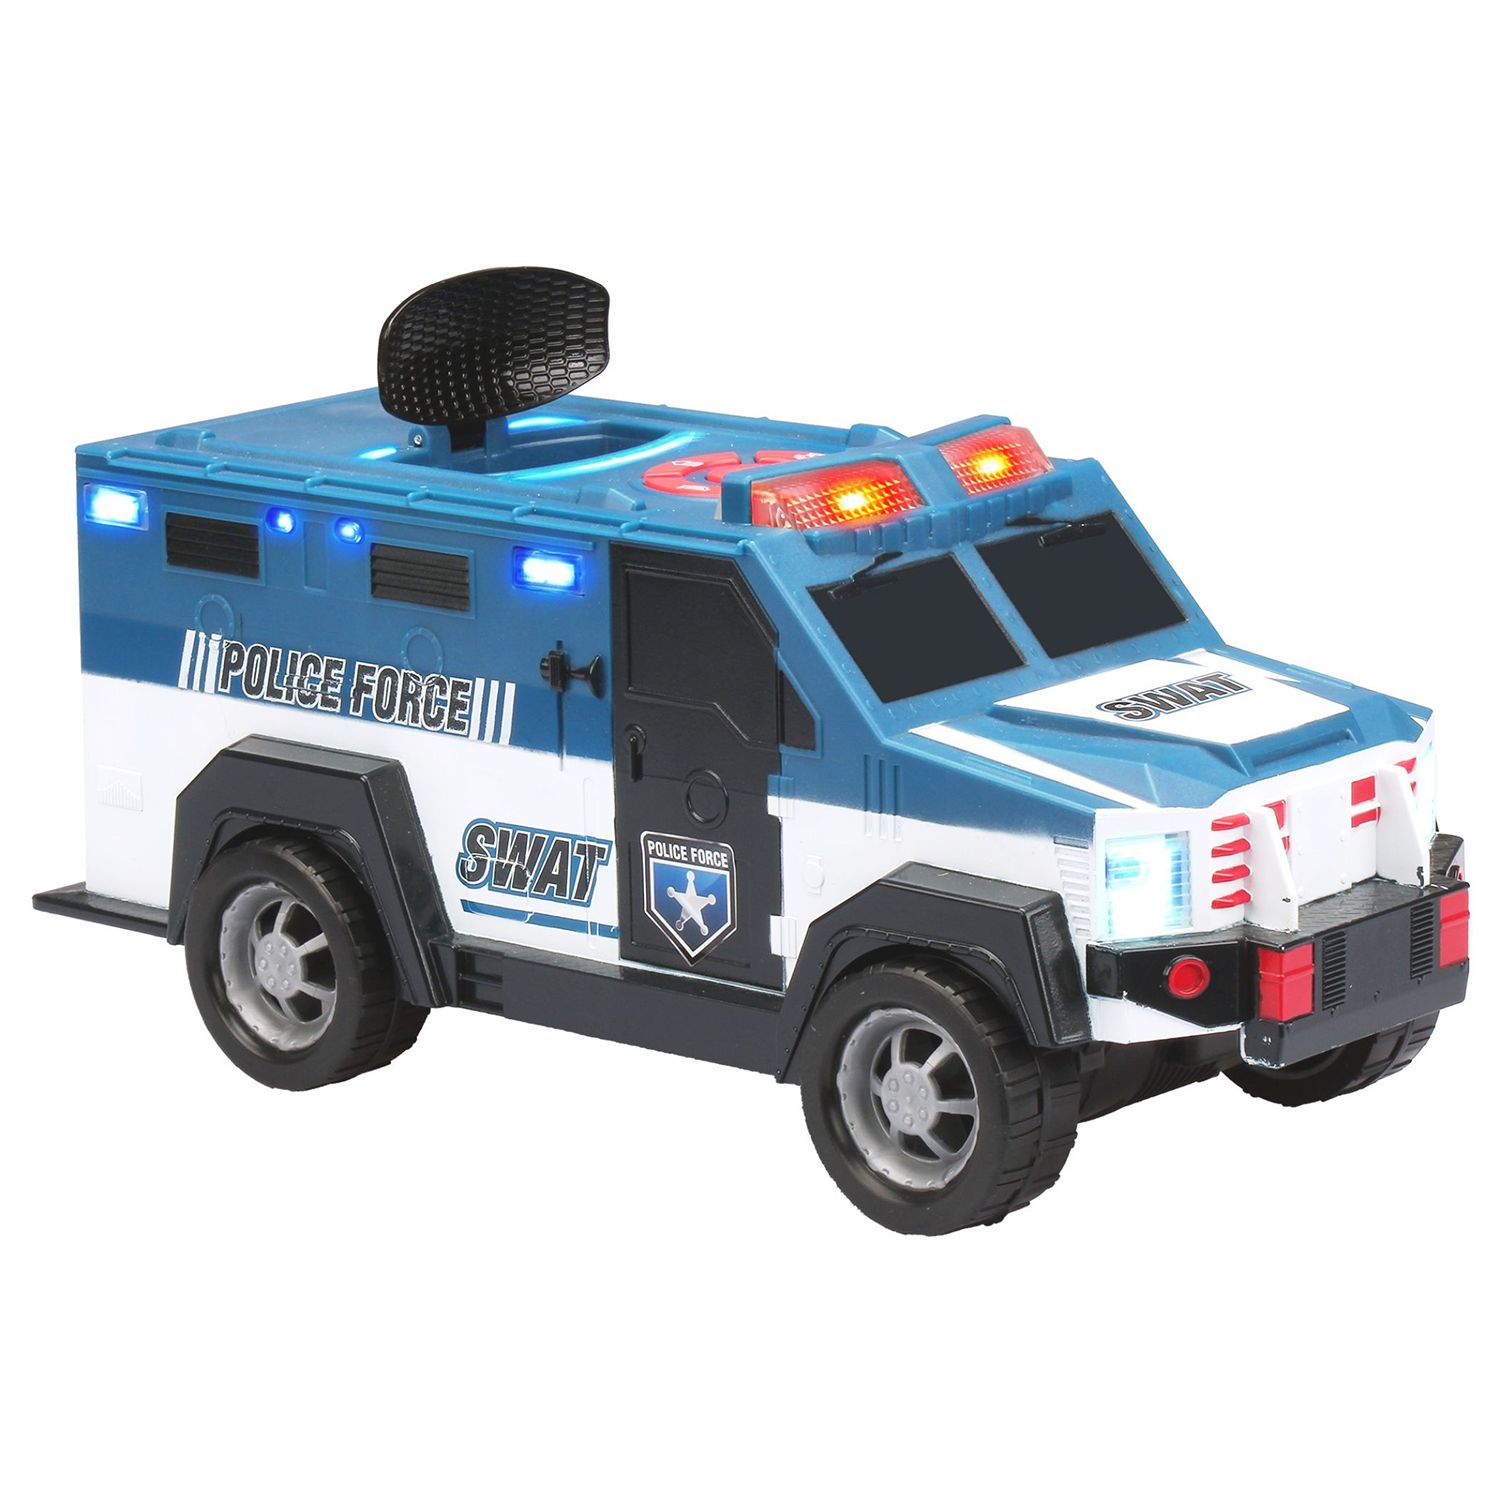 swat truck toy